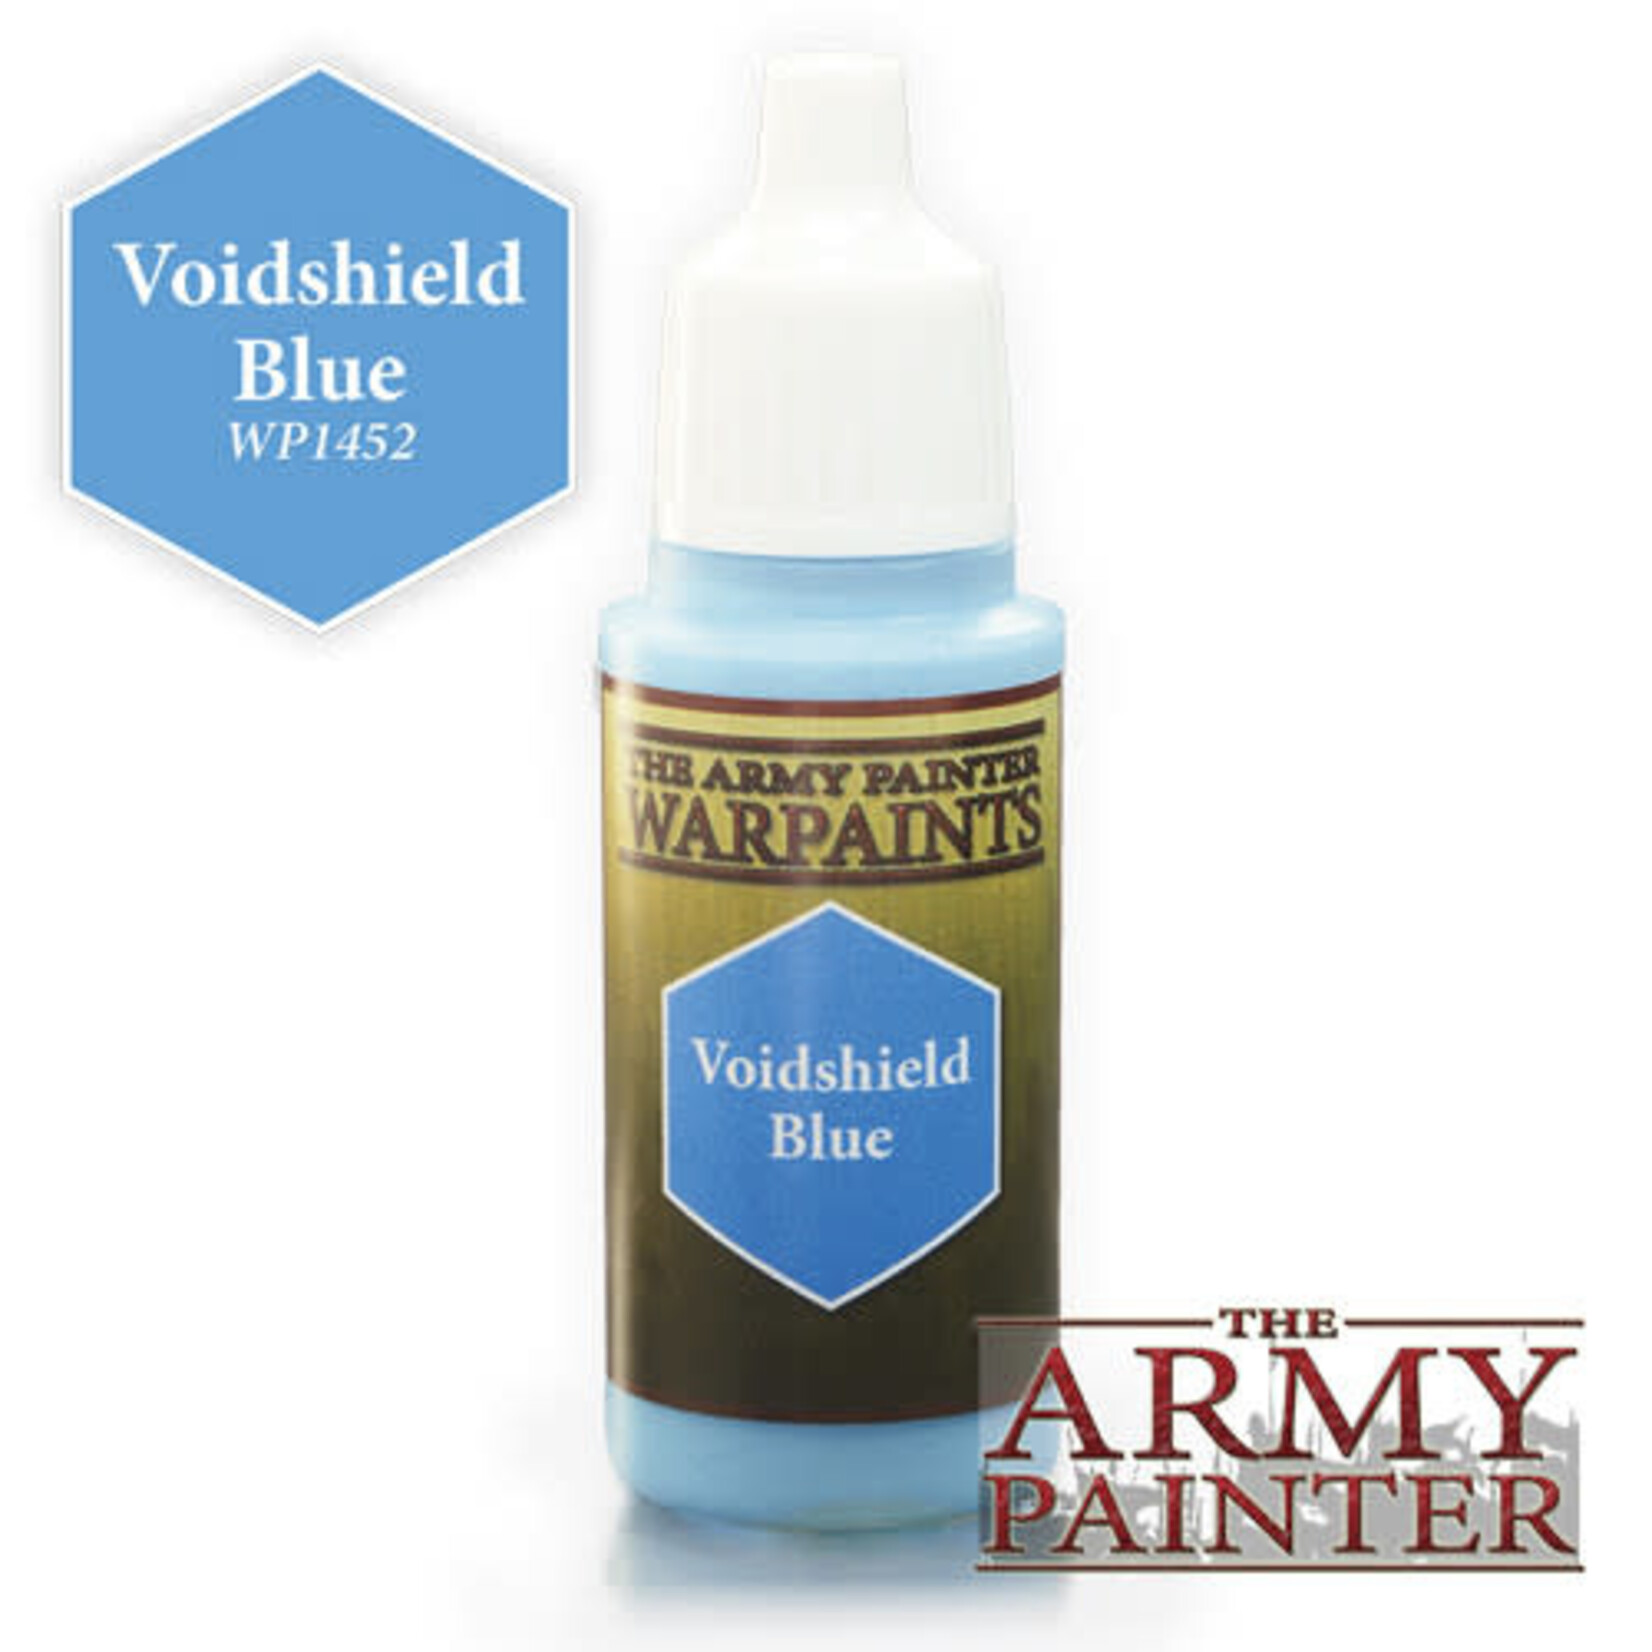 The Army Painter Warpaints: Voidshield Blue 18ml